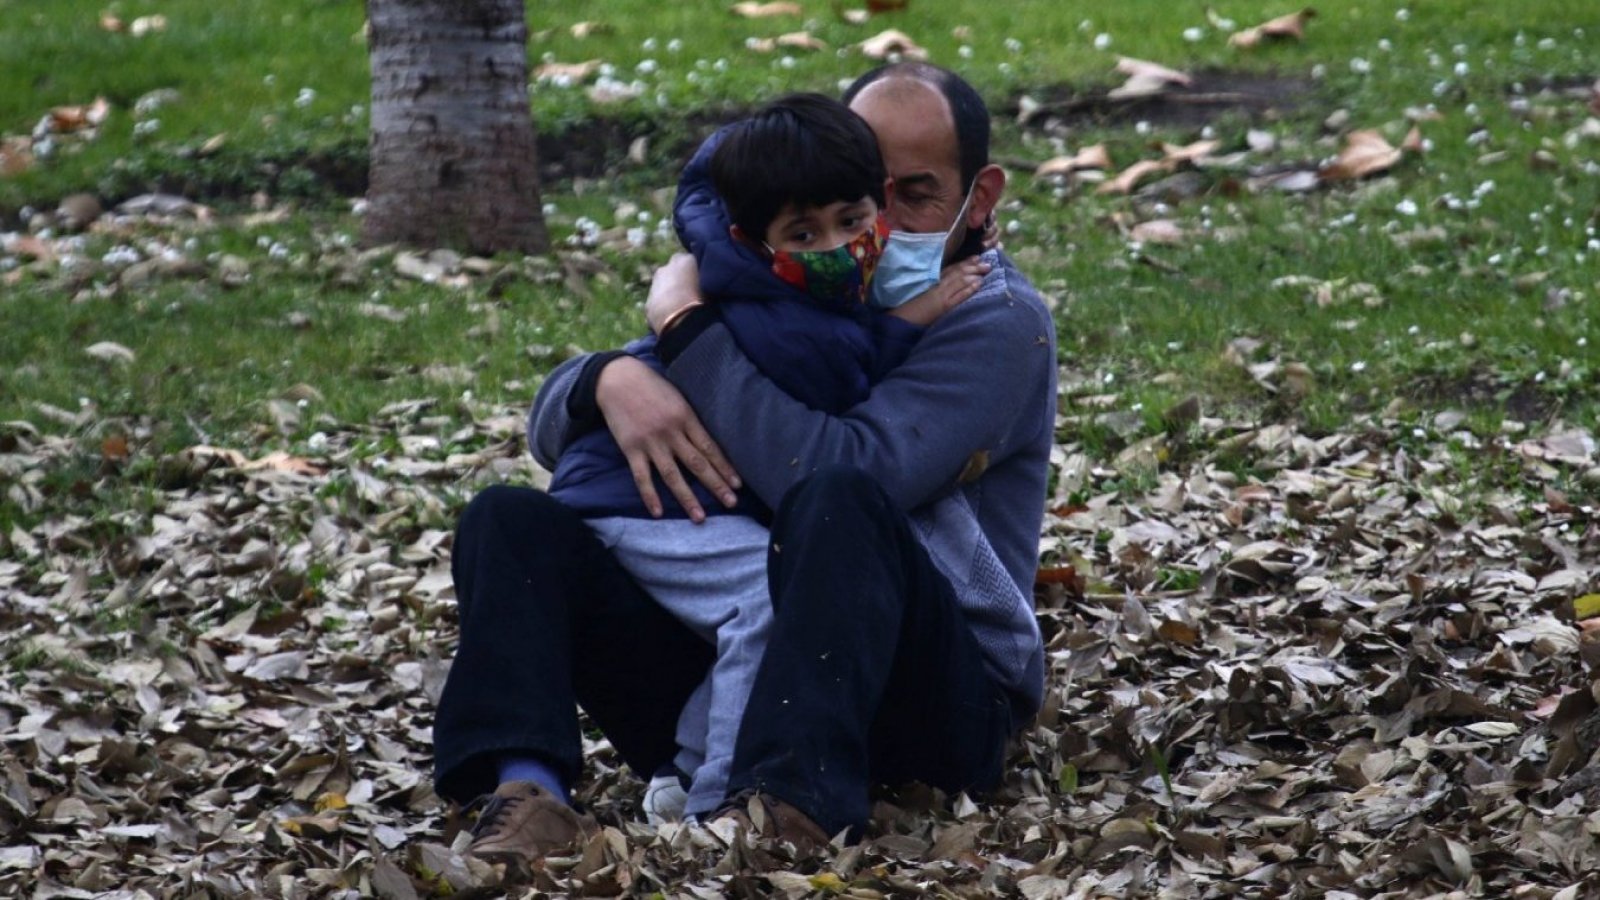 Padre sujetando a su hijo en brazos.